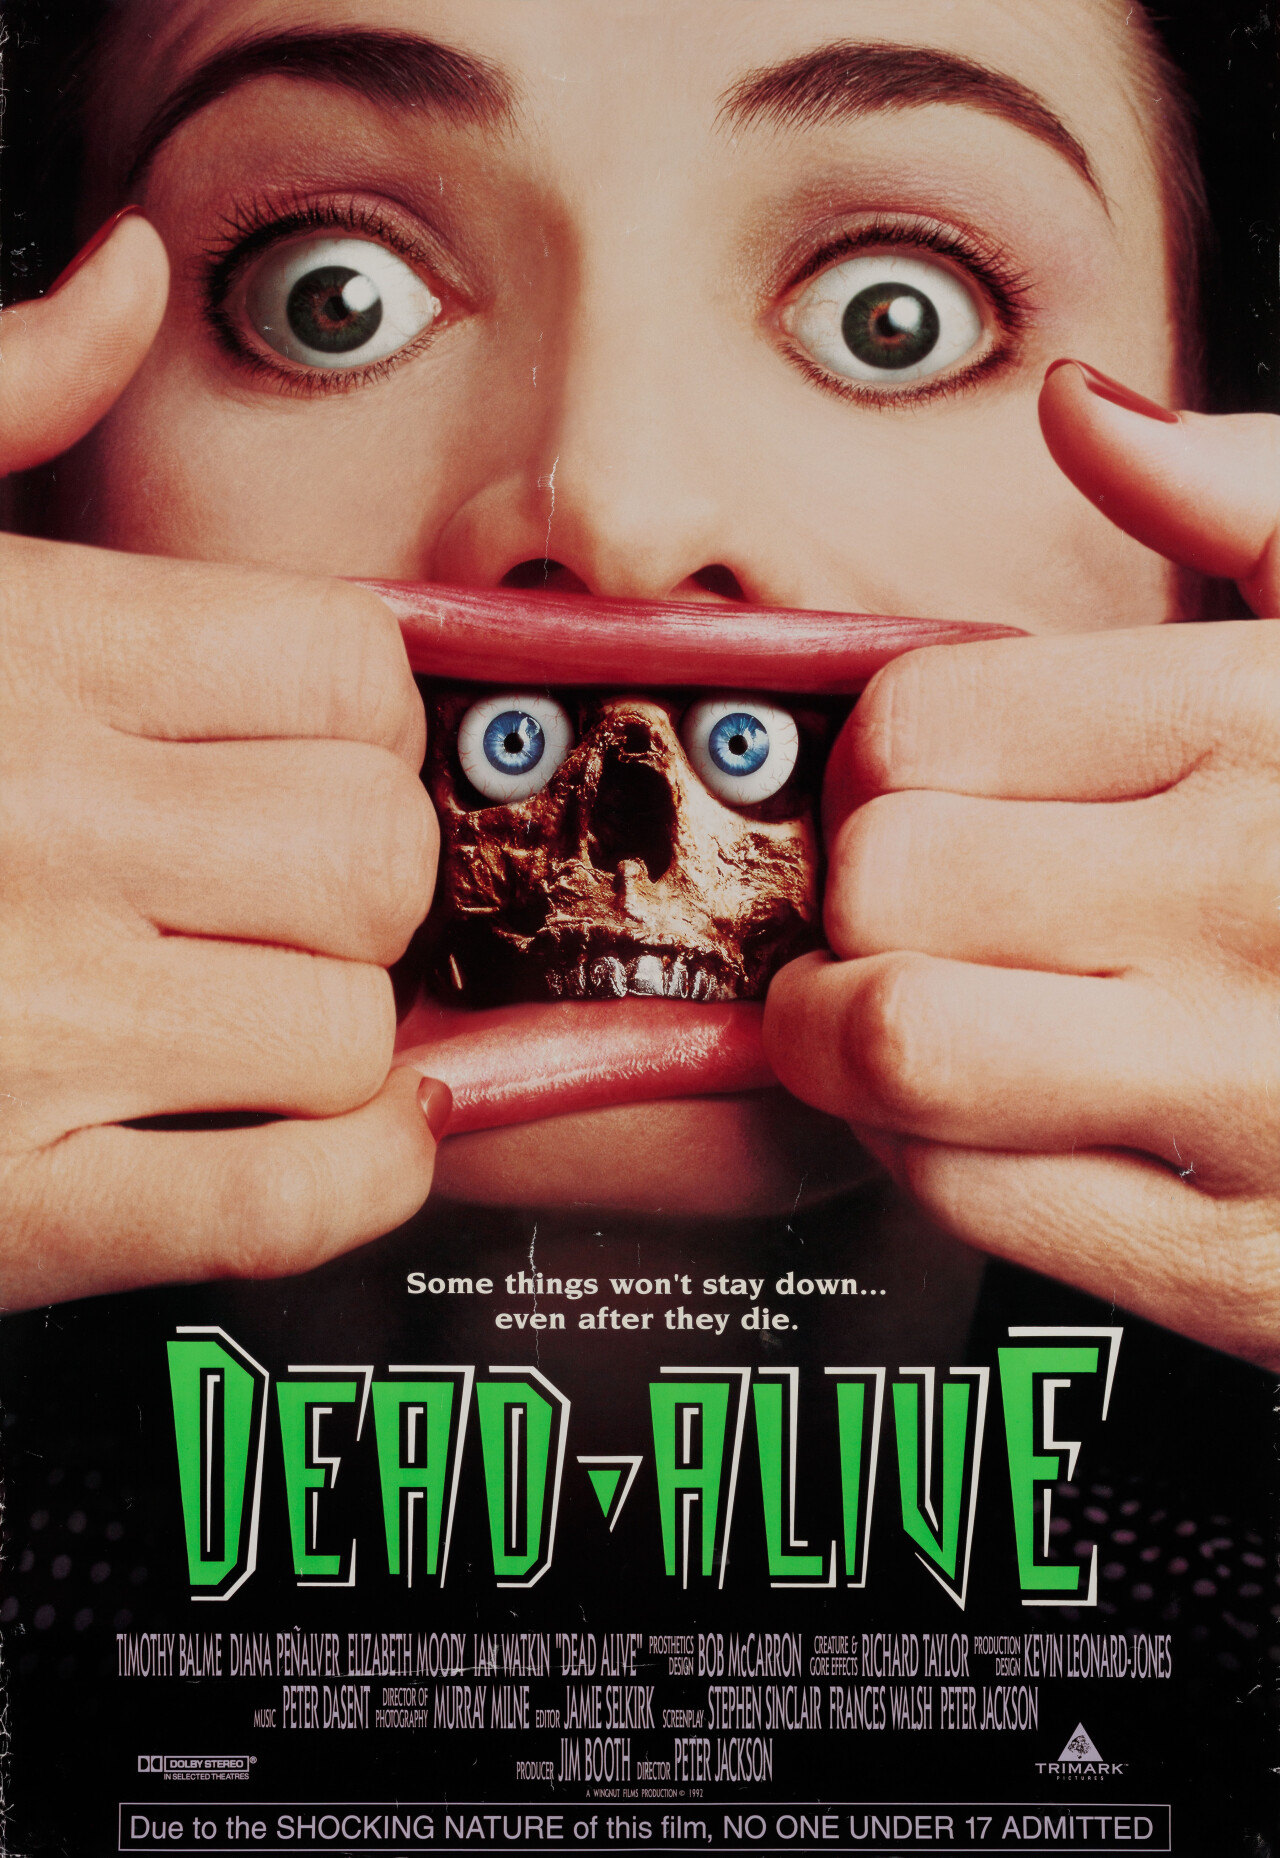 Живая мертвечина (Braindead, 1992), режиссёр Питер Джексон, американский постер к фильму (ужасы, 1992 год)